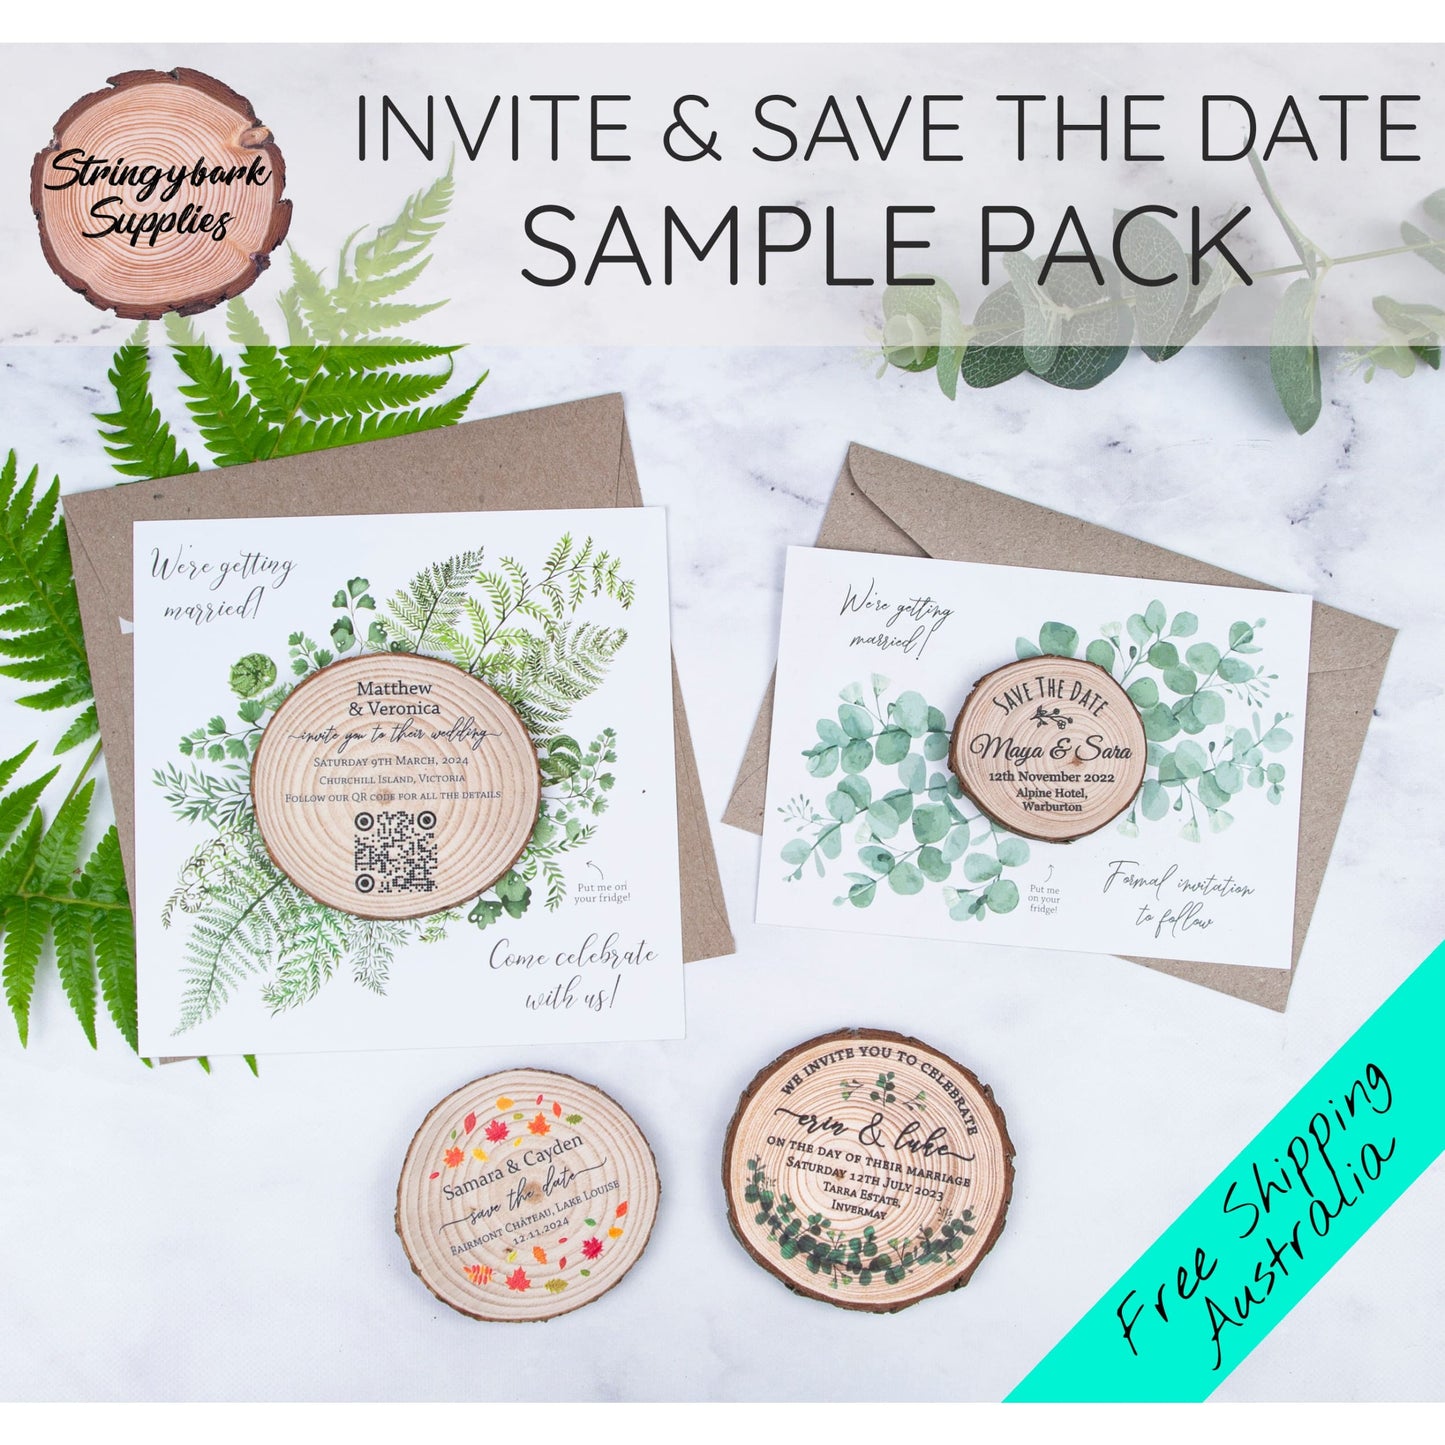 WEDDING INVITATIONS, FREE Sample Packs